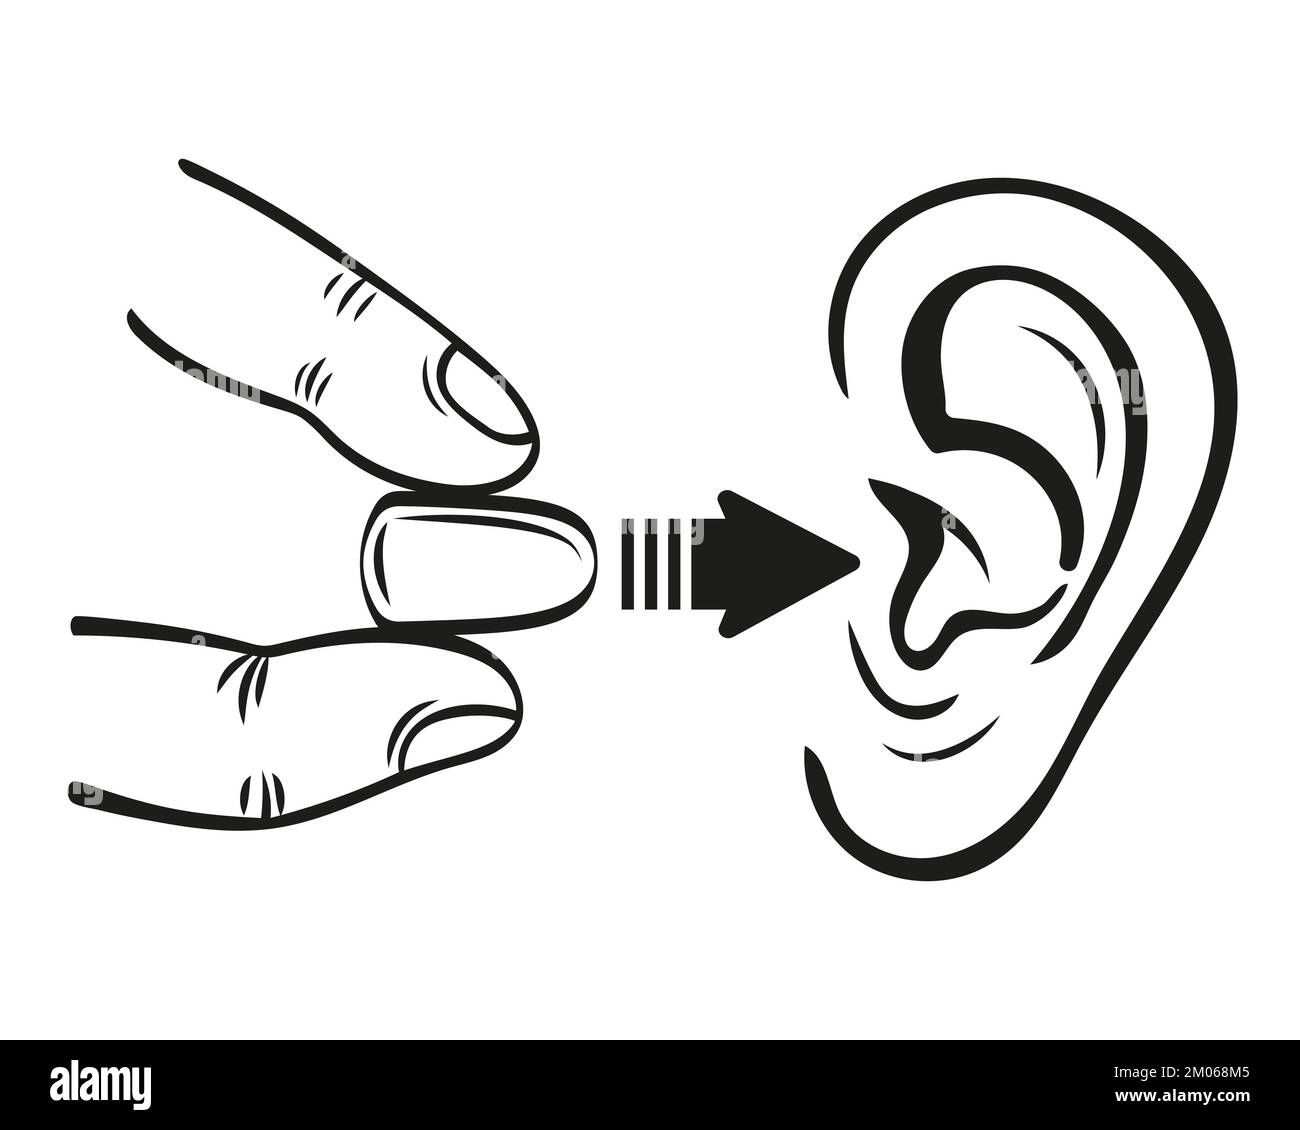 Gehörschutzstöpsel Gehörschutz, Schaumstoff-Gehörschutzstöpsel von lauten Hörgeräuschen, Staubliniensymbol. Taubheit, Gesundheitsschlaf in Stille. Persönlicher Accessoire-Vektor Stock Vektor